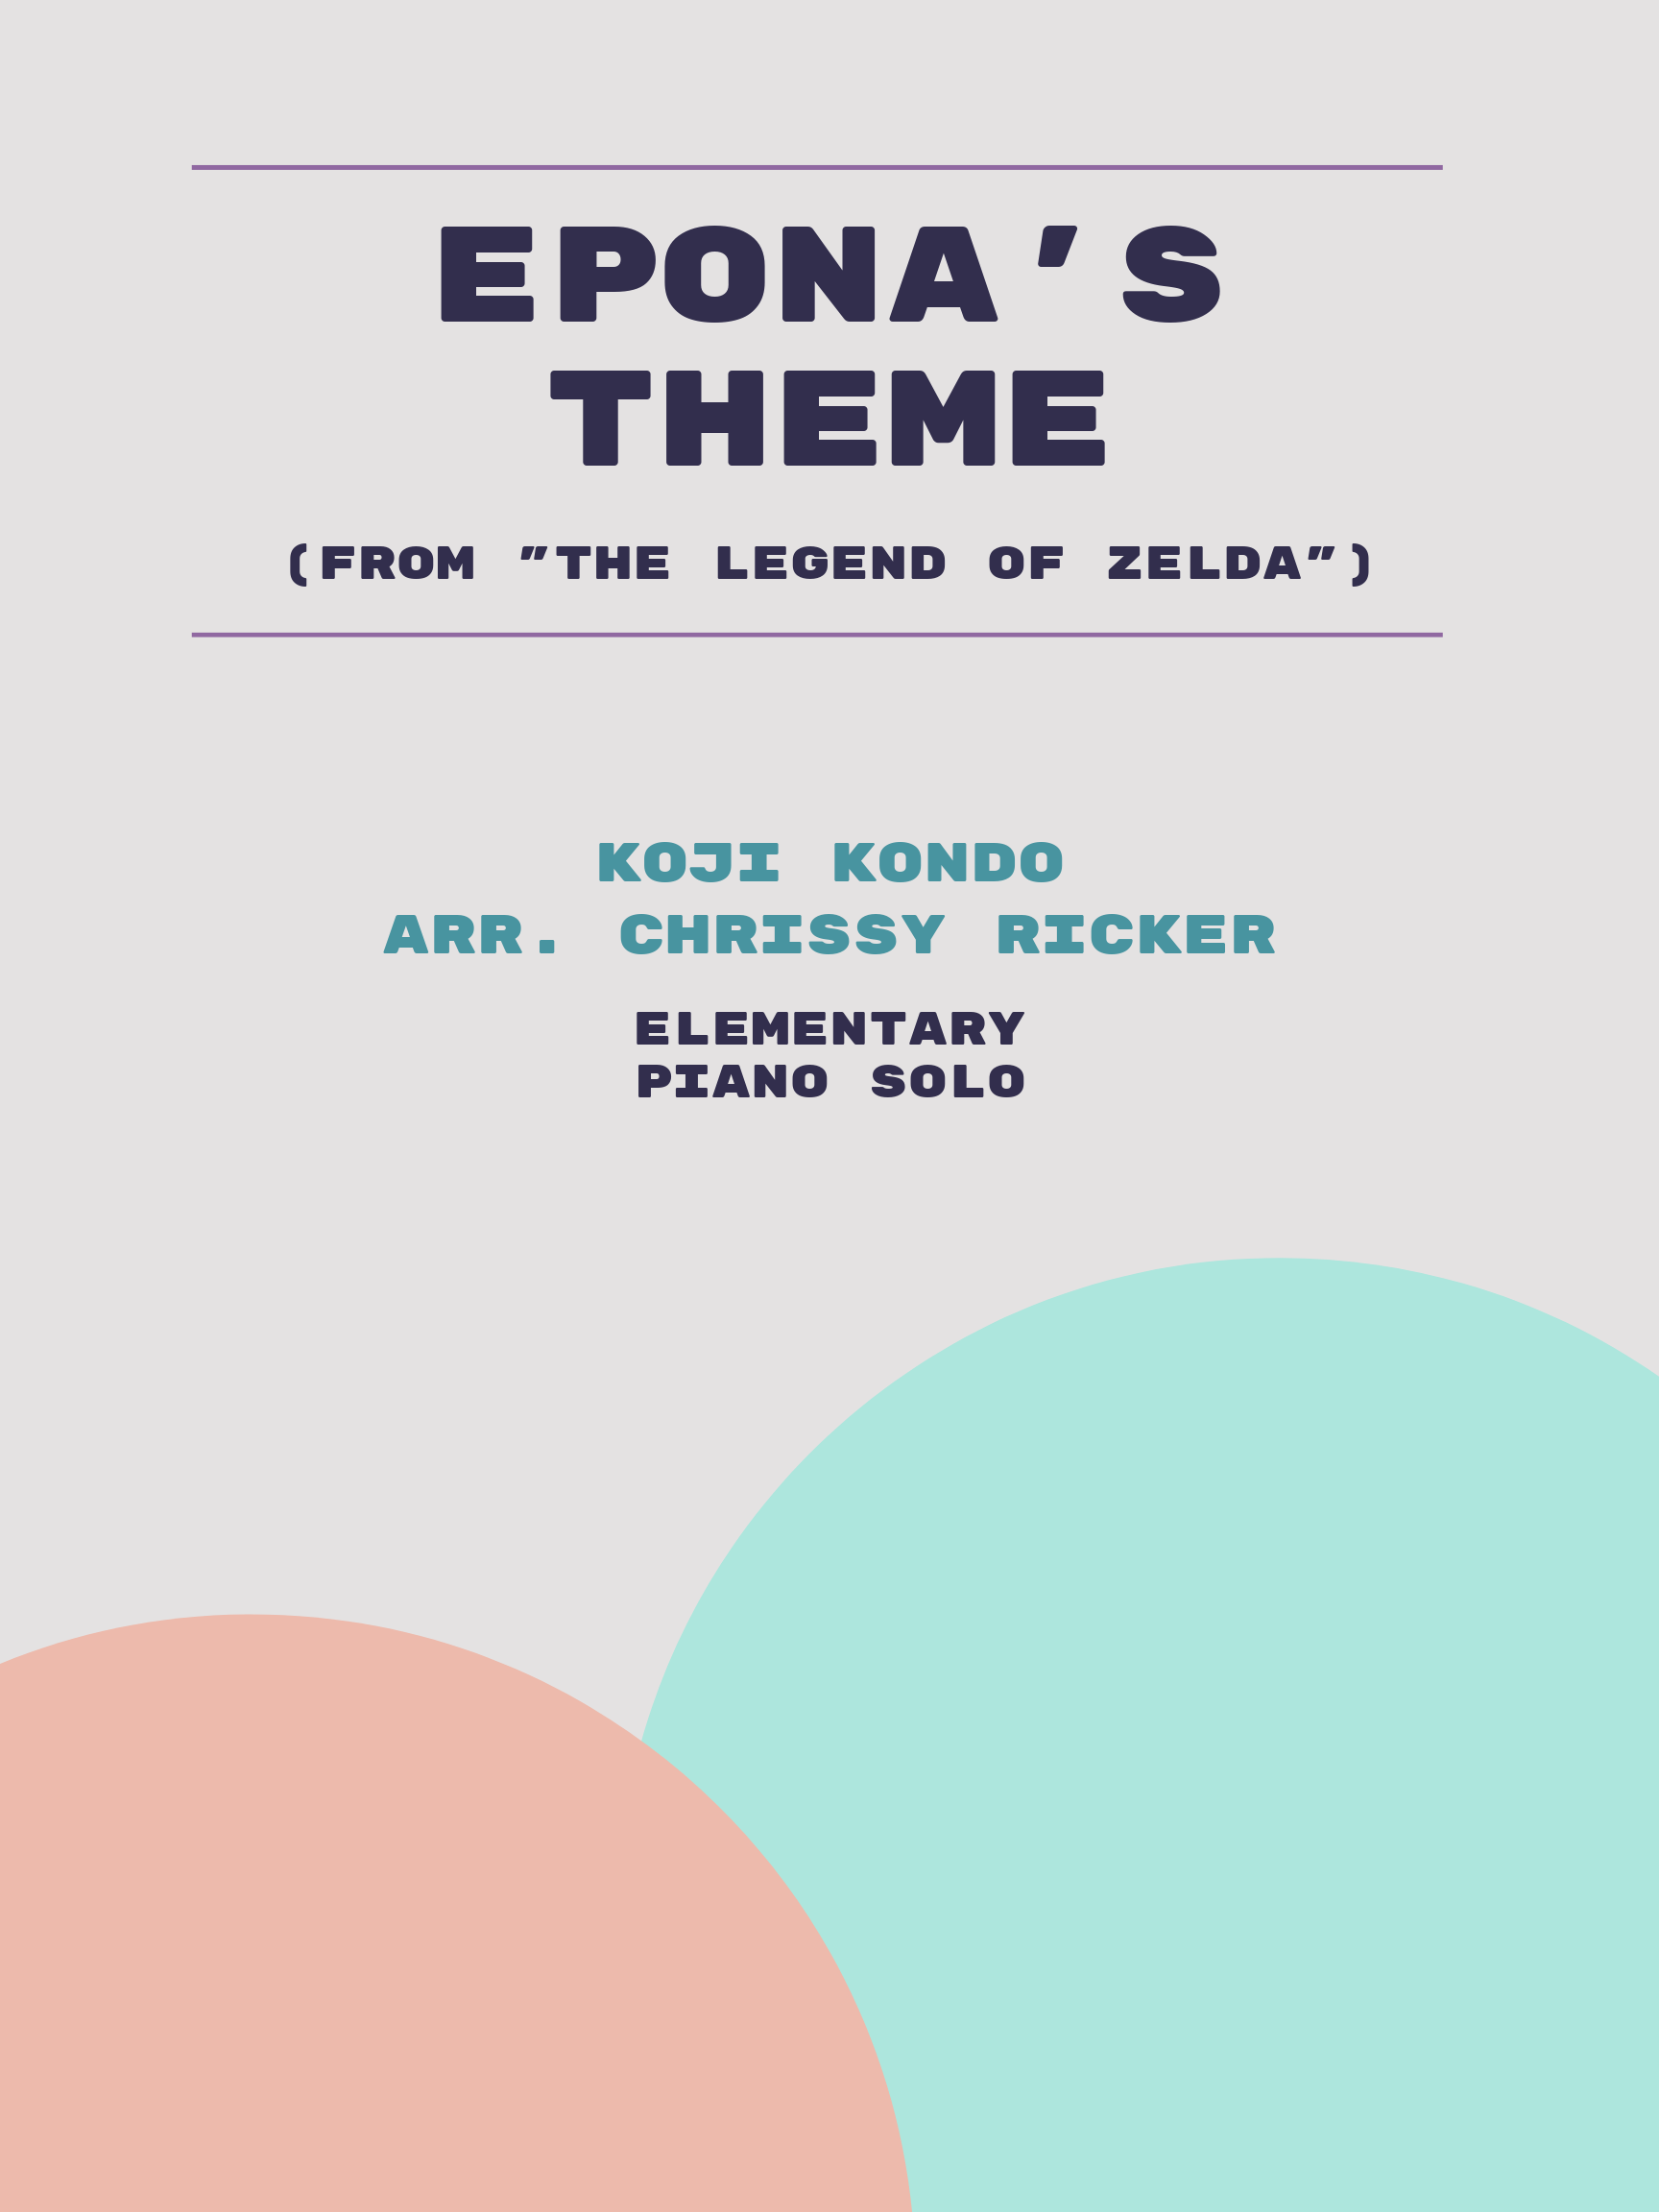 Epona's Theme by Koji Kondo